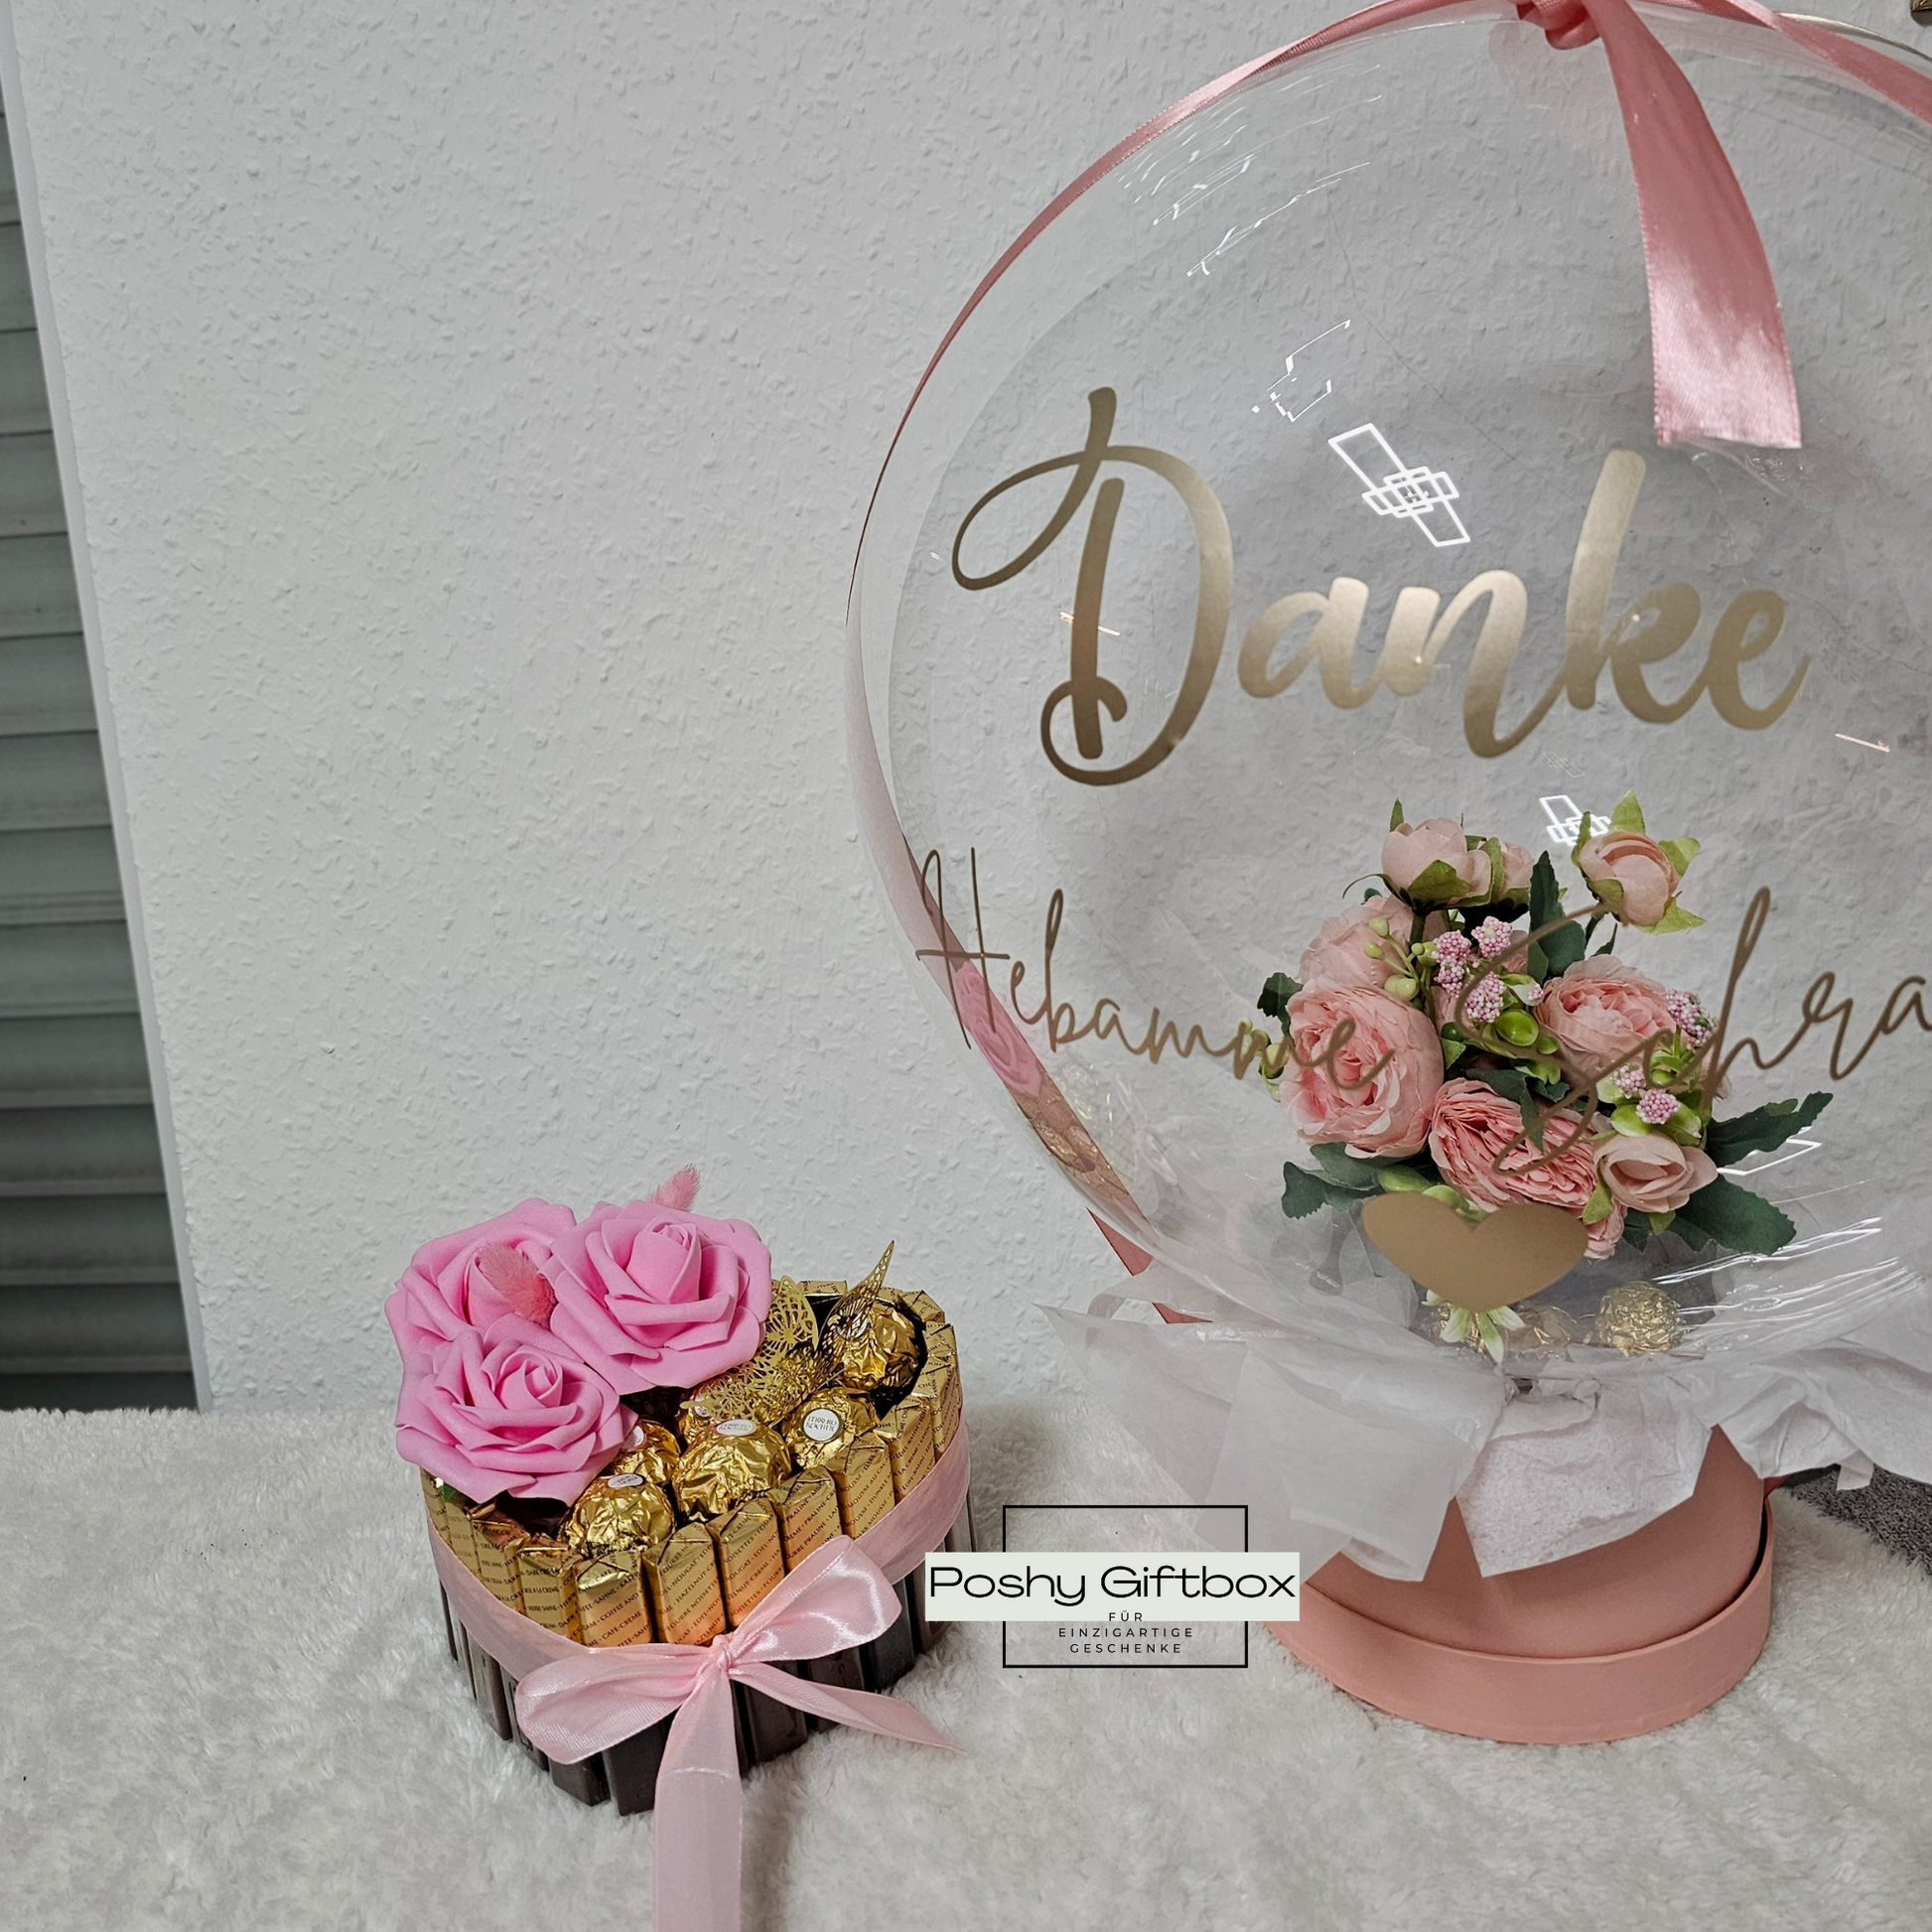 Ballon mit Blumen/Personalisierter Ballon/Ballongrüße/Geburtstagsgeshenk/Muttertagsgeschenk/Geschenke für Frauen/Geschenk Danke Hebamme/Lehrerin/Erzieherin PoshyGiftbox